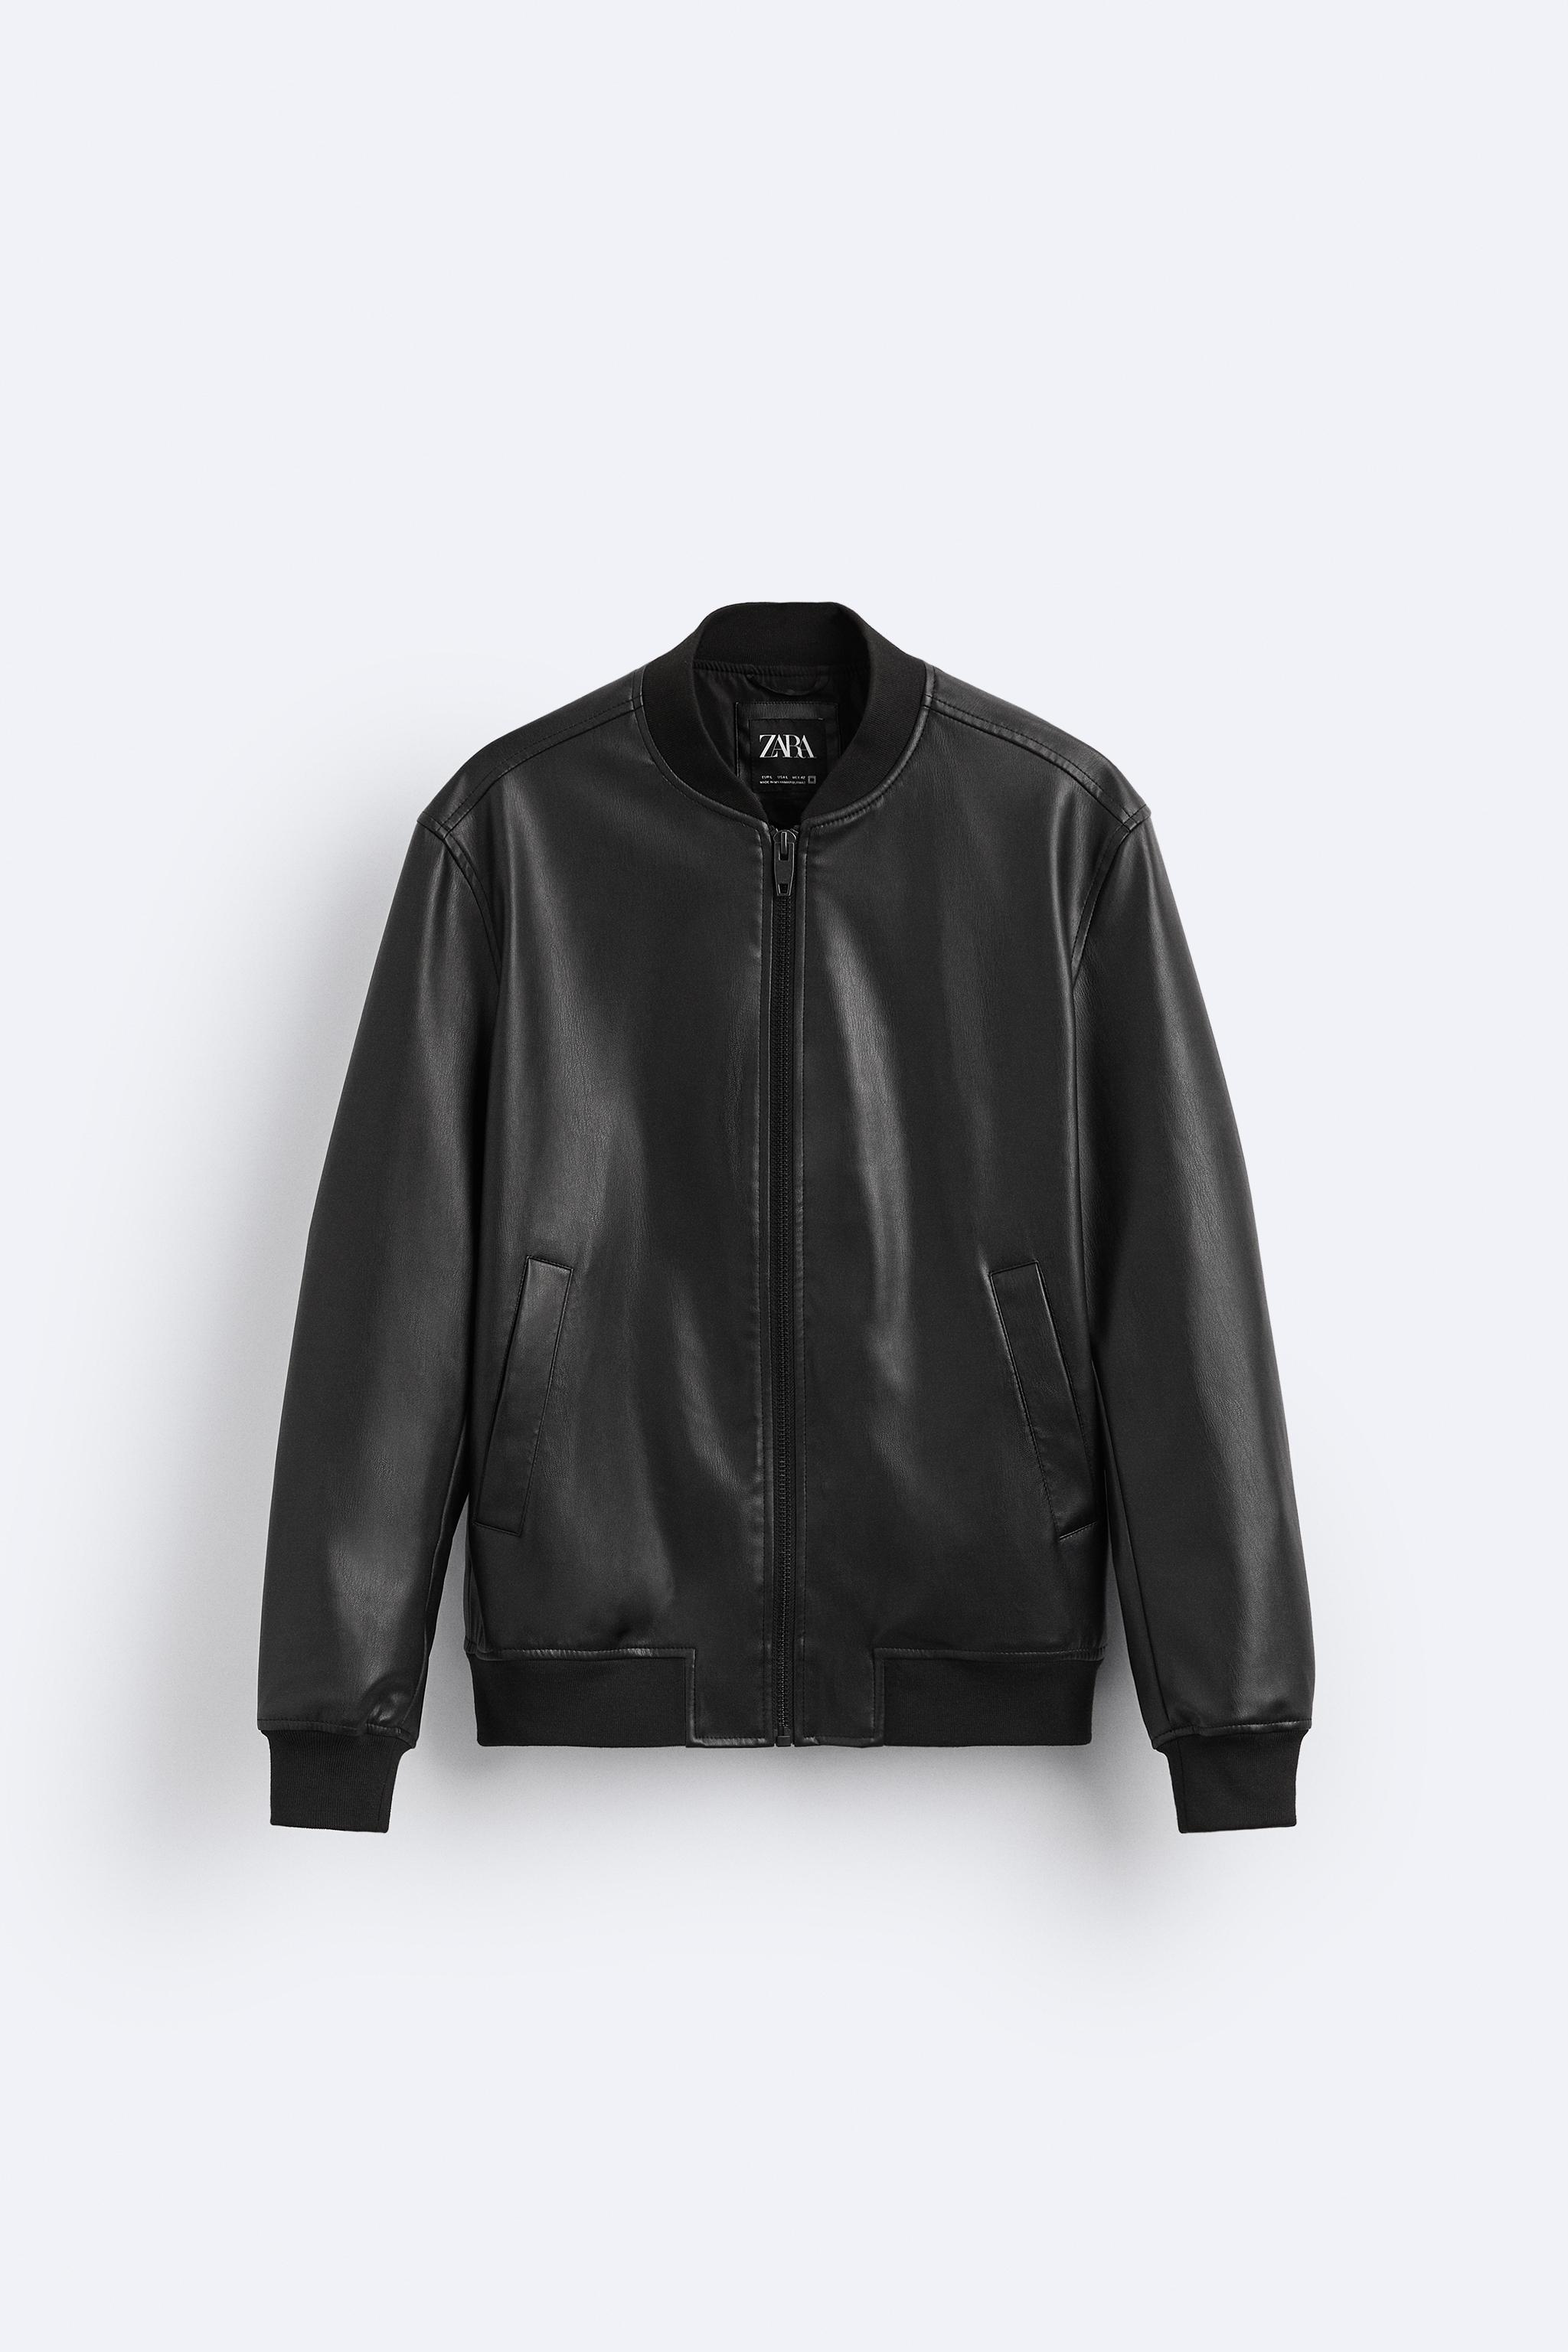 zara faux leather bomber jacket